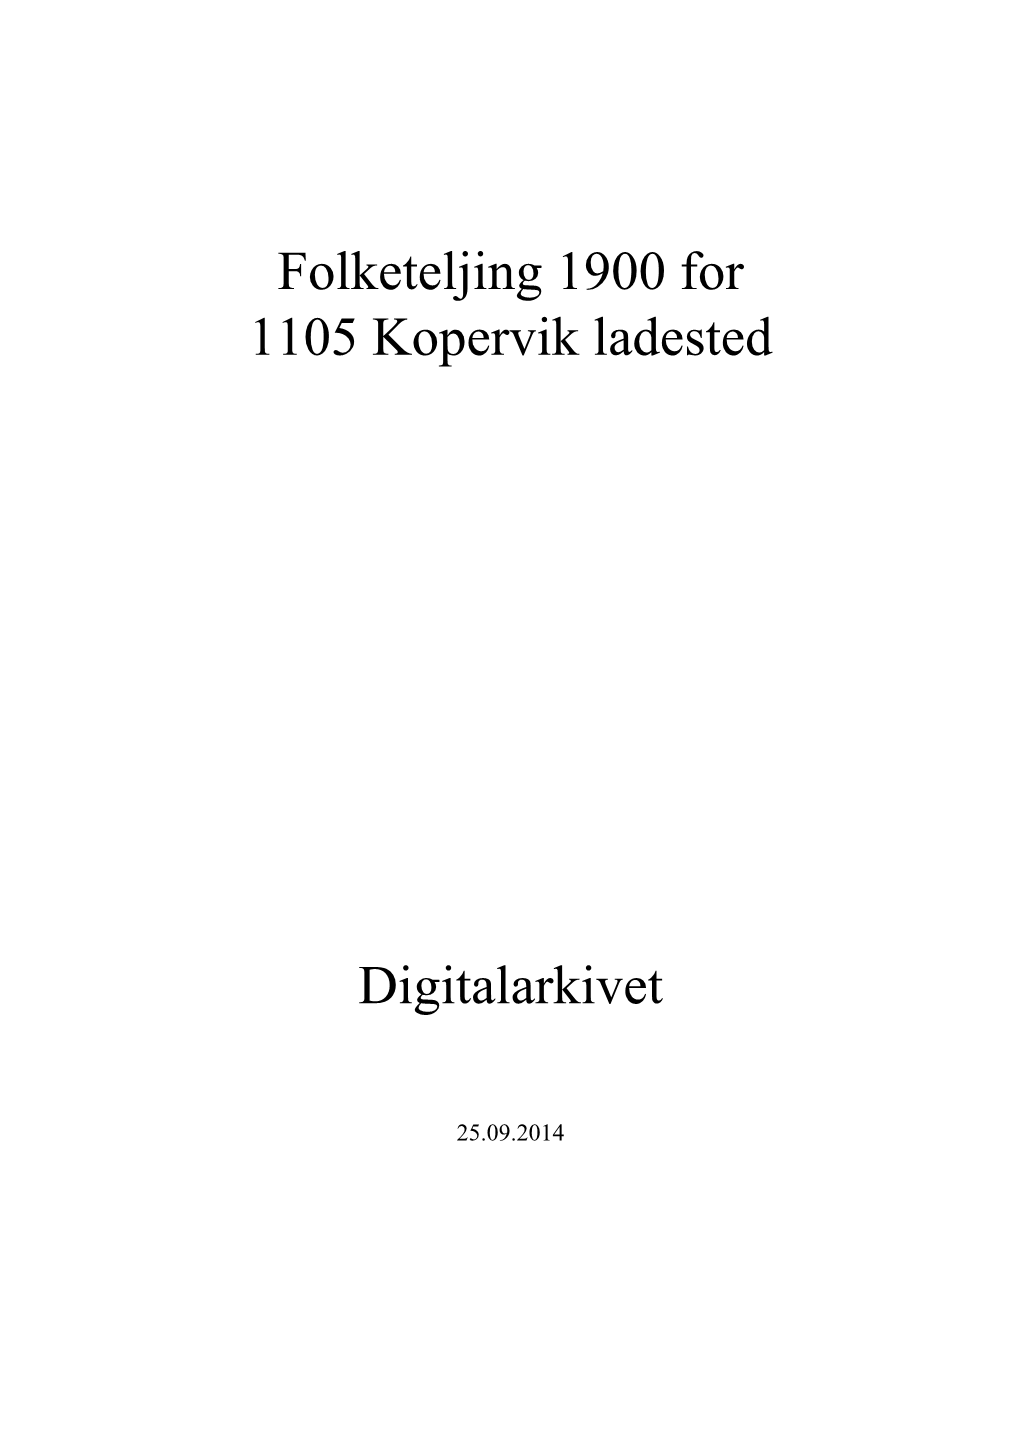 Folketeljing 1900 for 1105 Kopervik Ladested Digitalarkivet